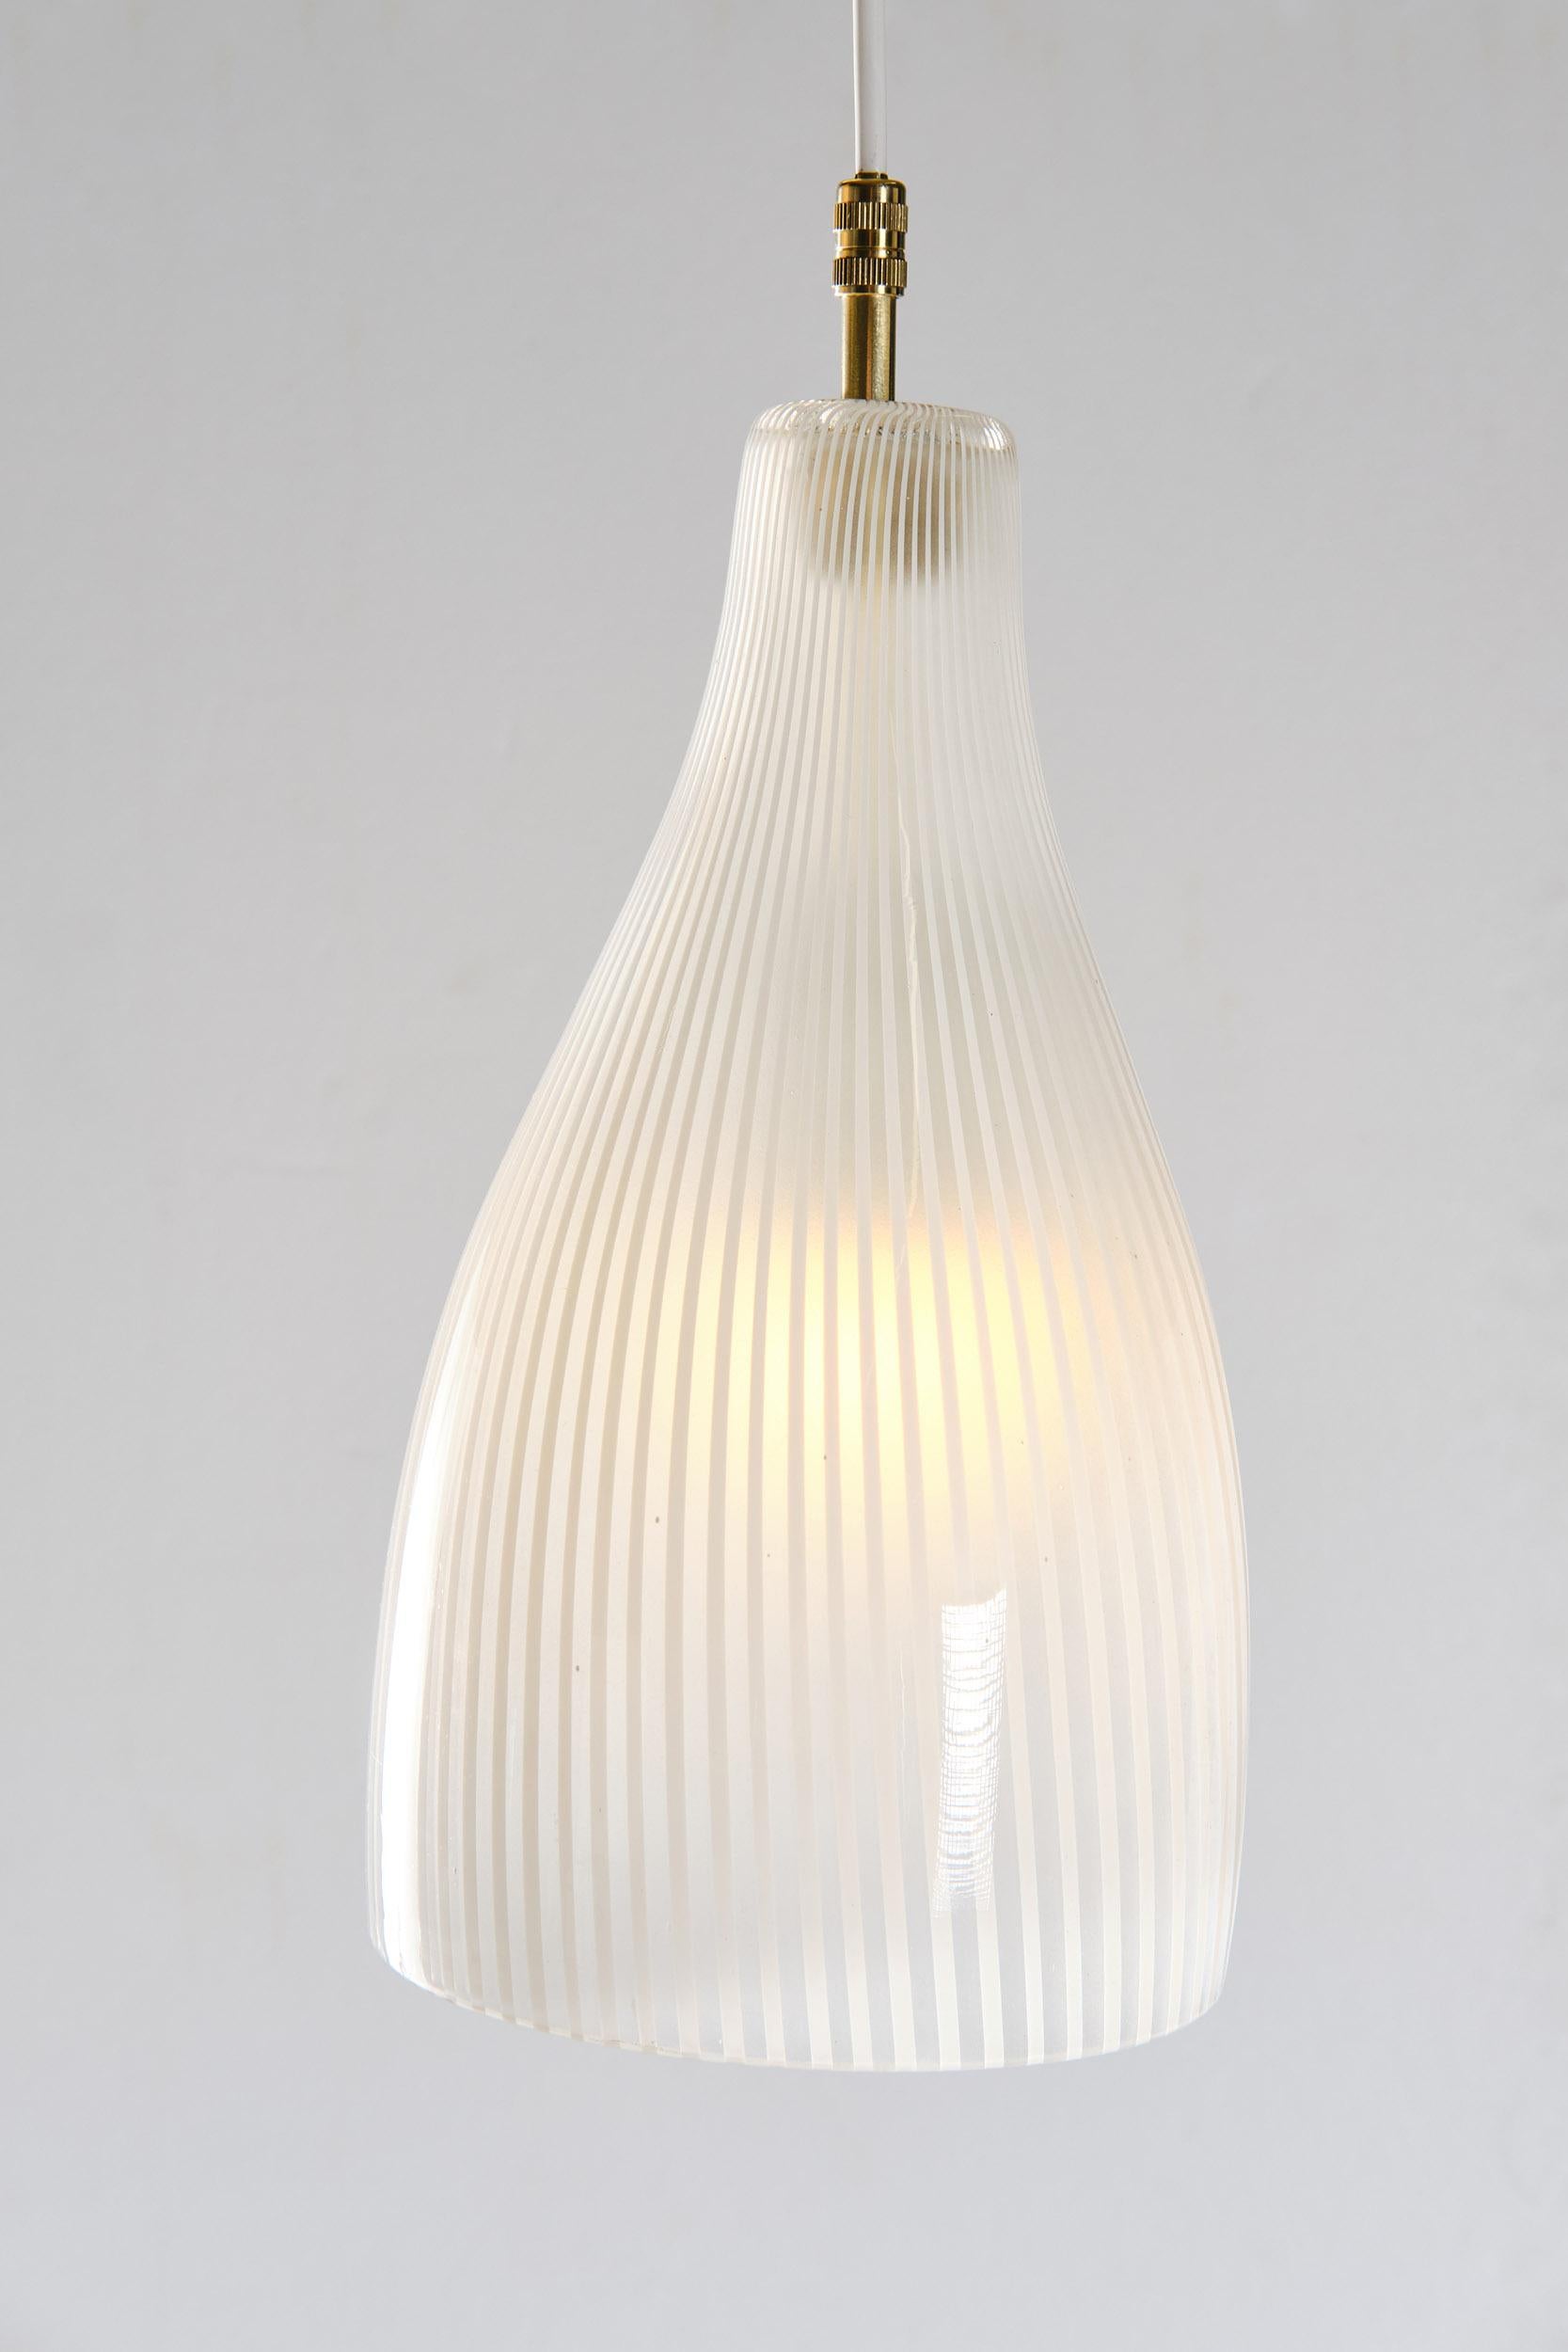 Massimo Vignelli for Venini Murano Pendant Glass Lamp, 1960s For Sale 3